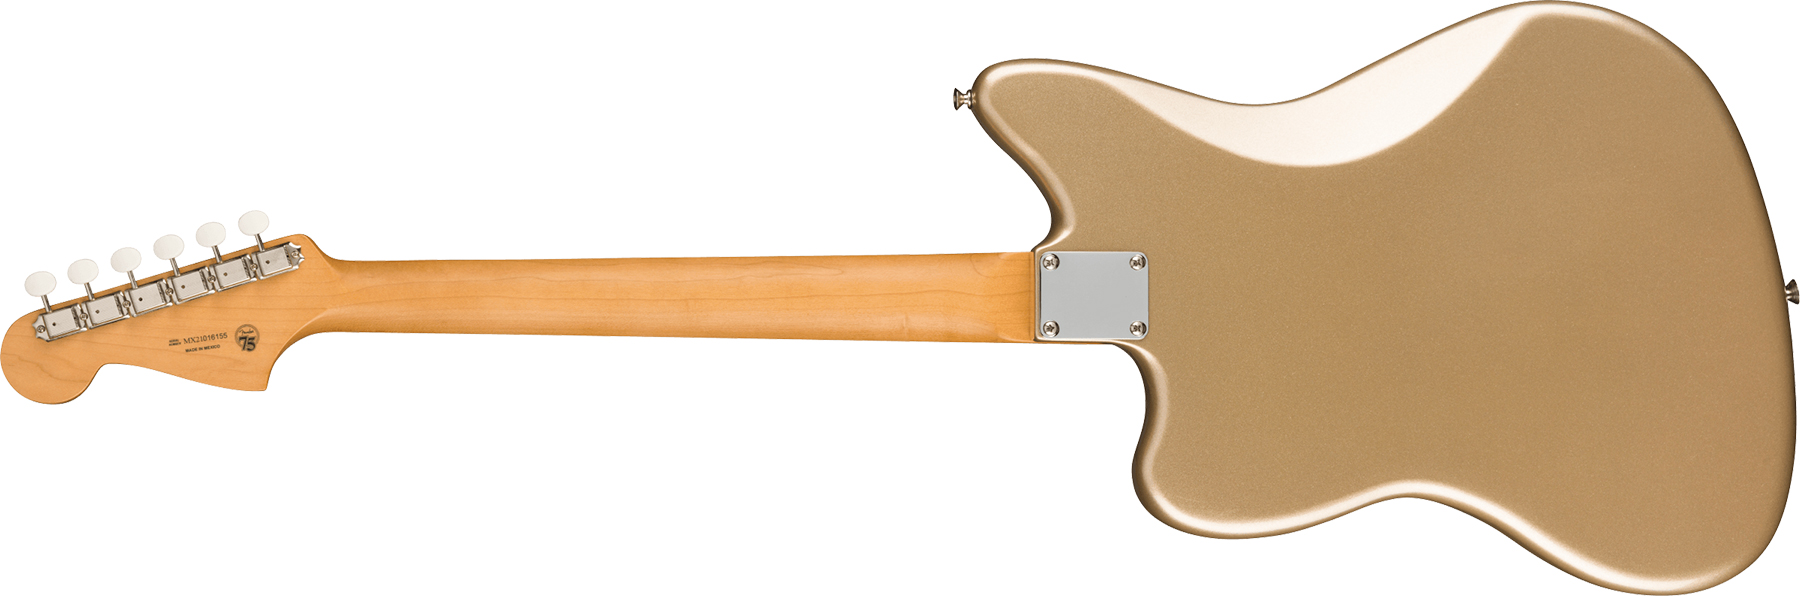 Fender Jazzmaster Gold Foil Ltd Mex 3mh Trem Bigsby Eb - Shoreline Gold - Guitare Électrique RÉtro Rock - Variation 1